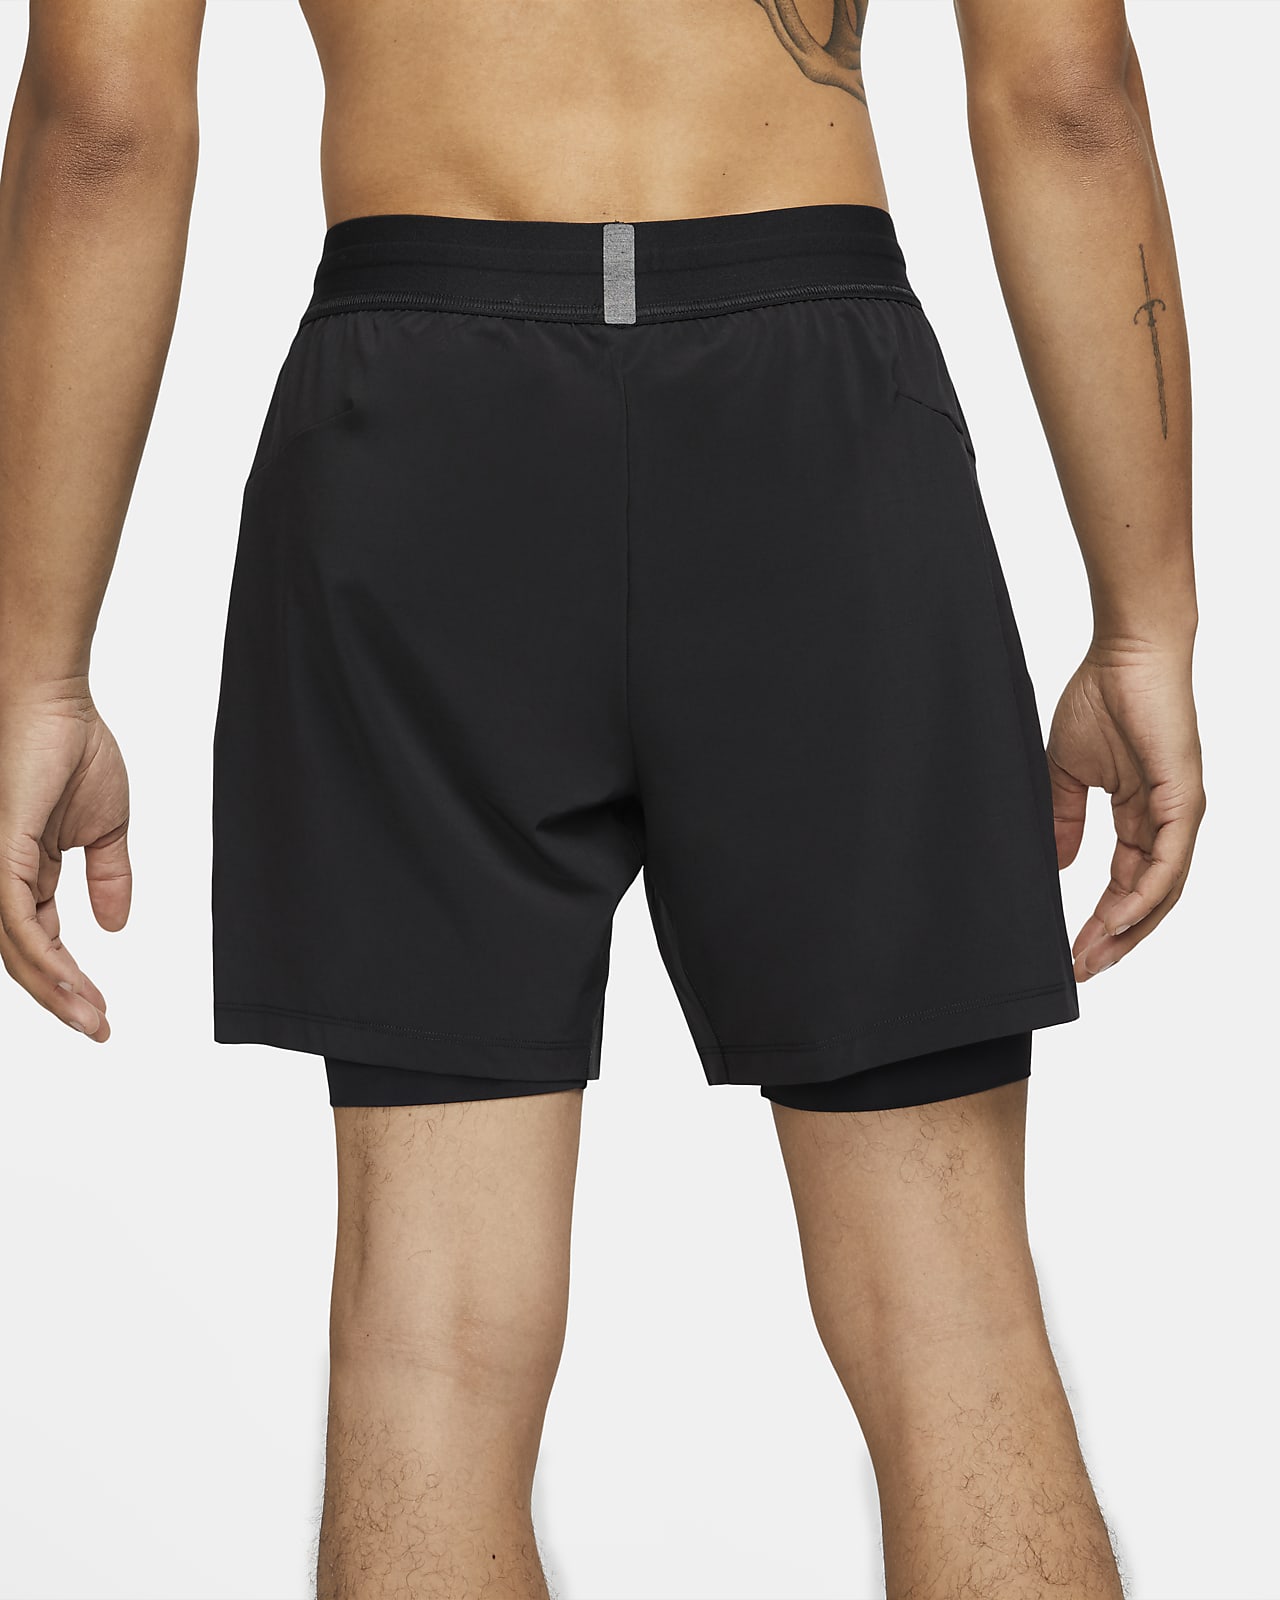 Nike Yoga Men's 2-in-1 Shorts.